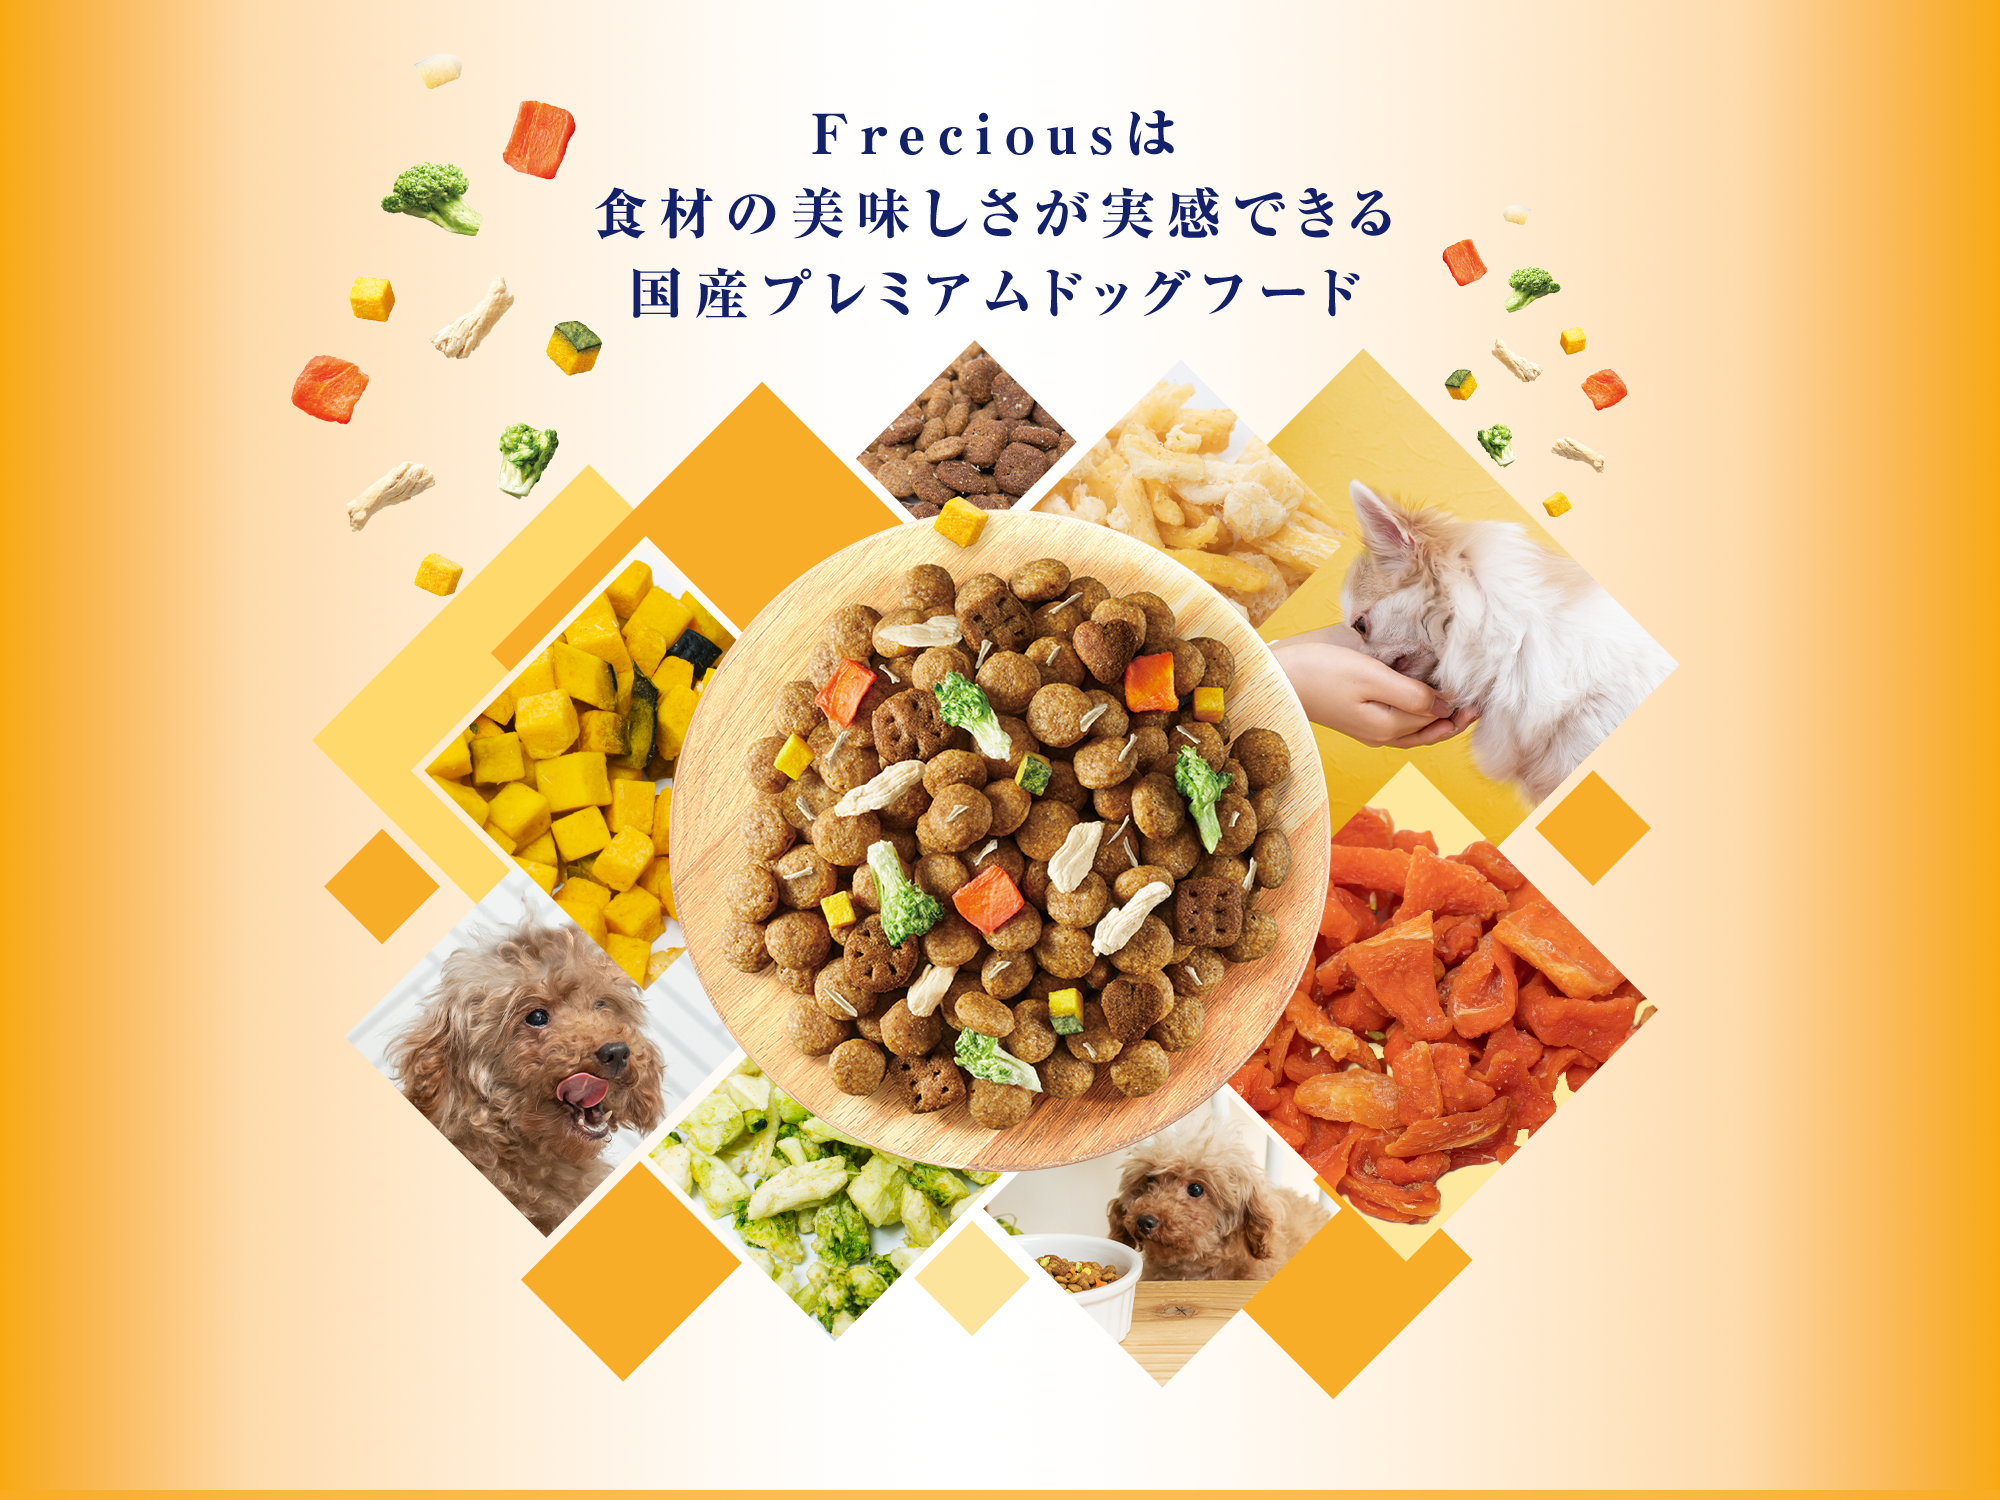 Freciousは食材の美味しさが実感できる国産プレミアムドッグフード